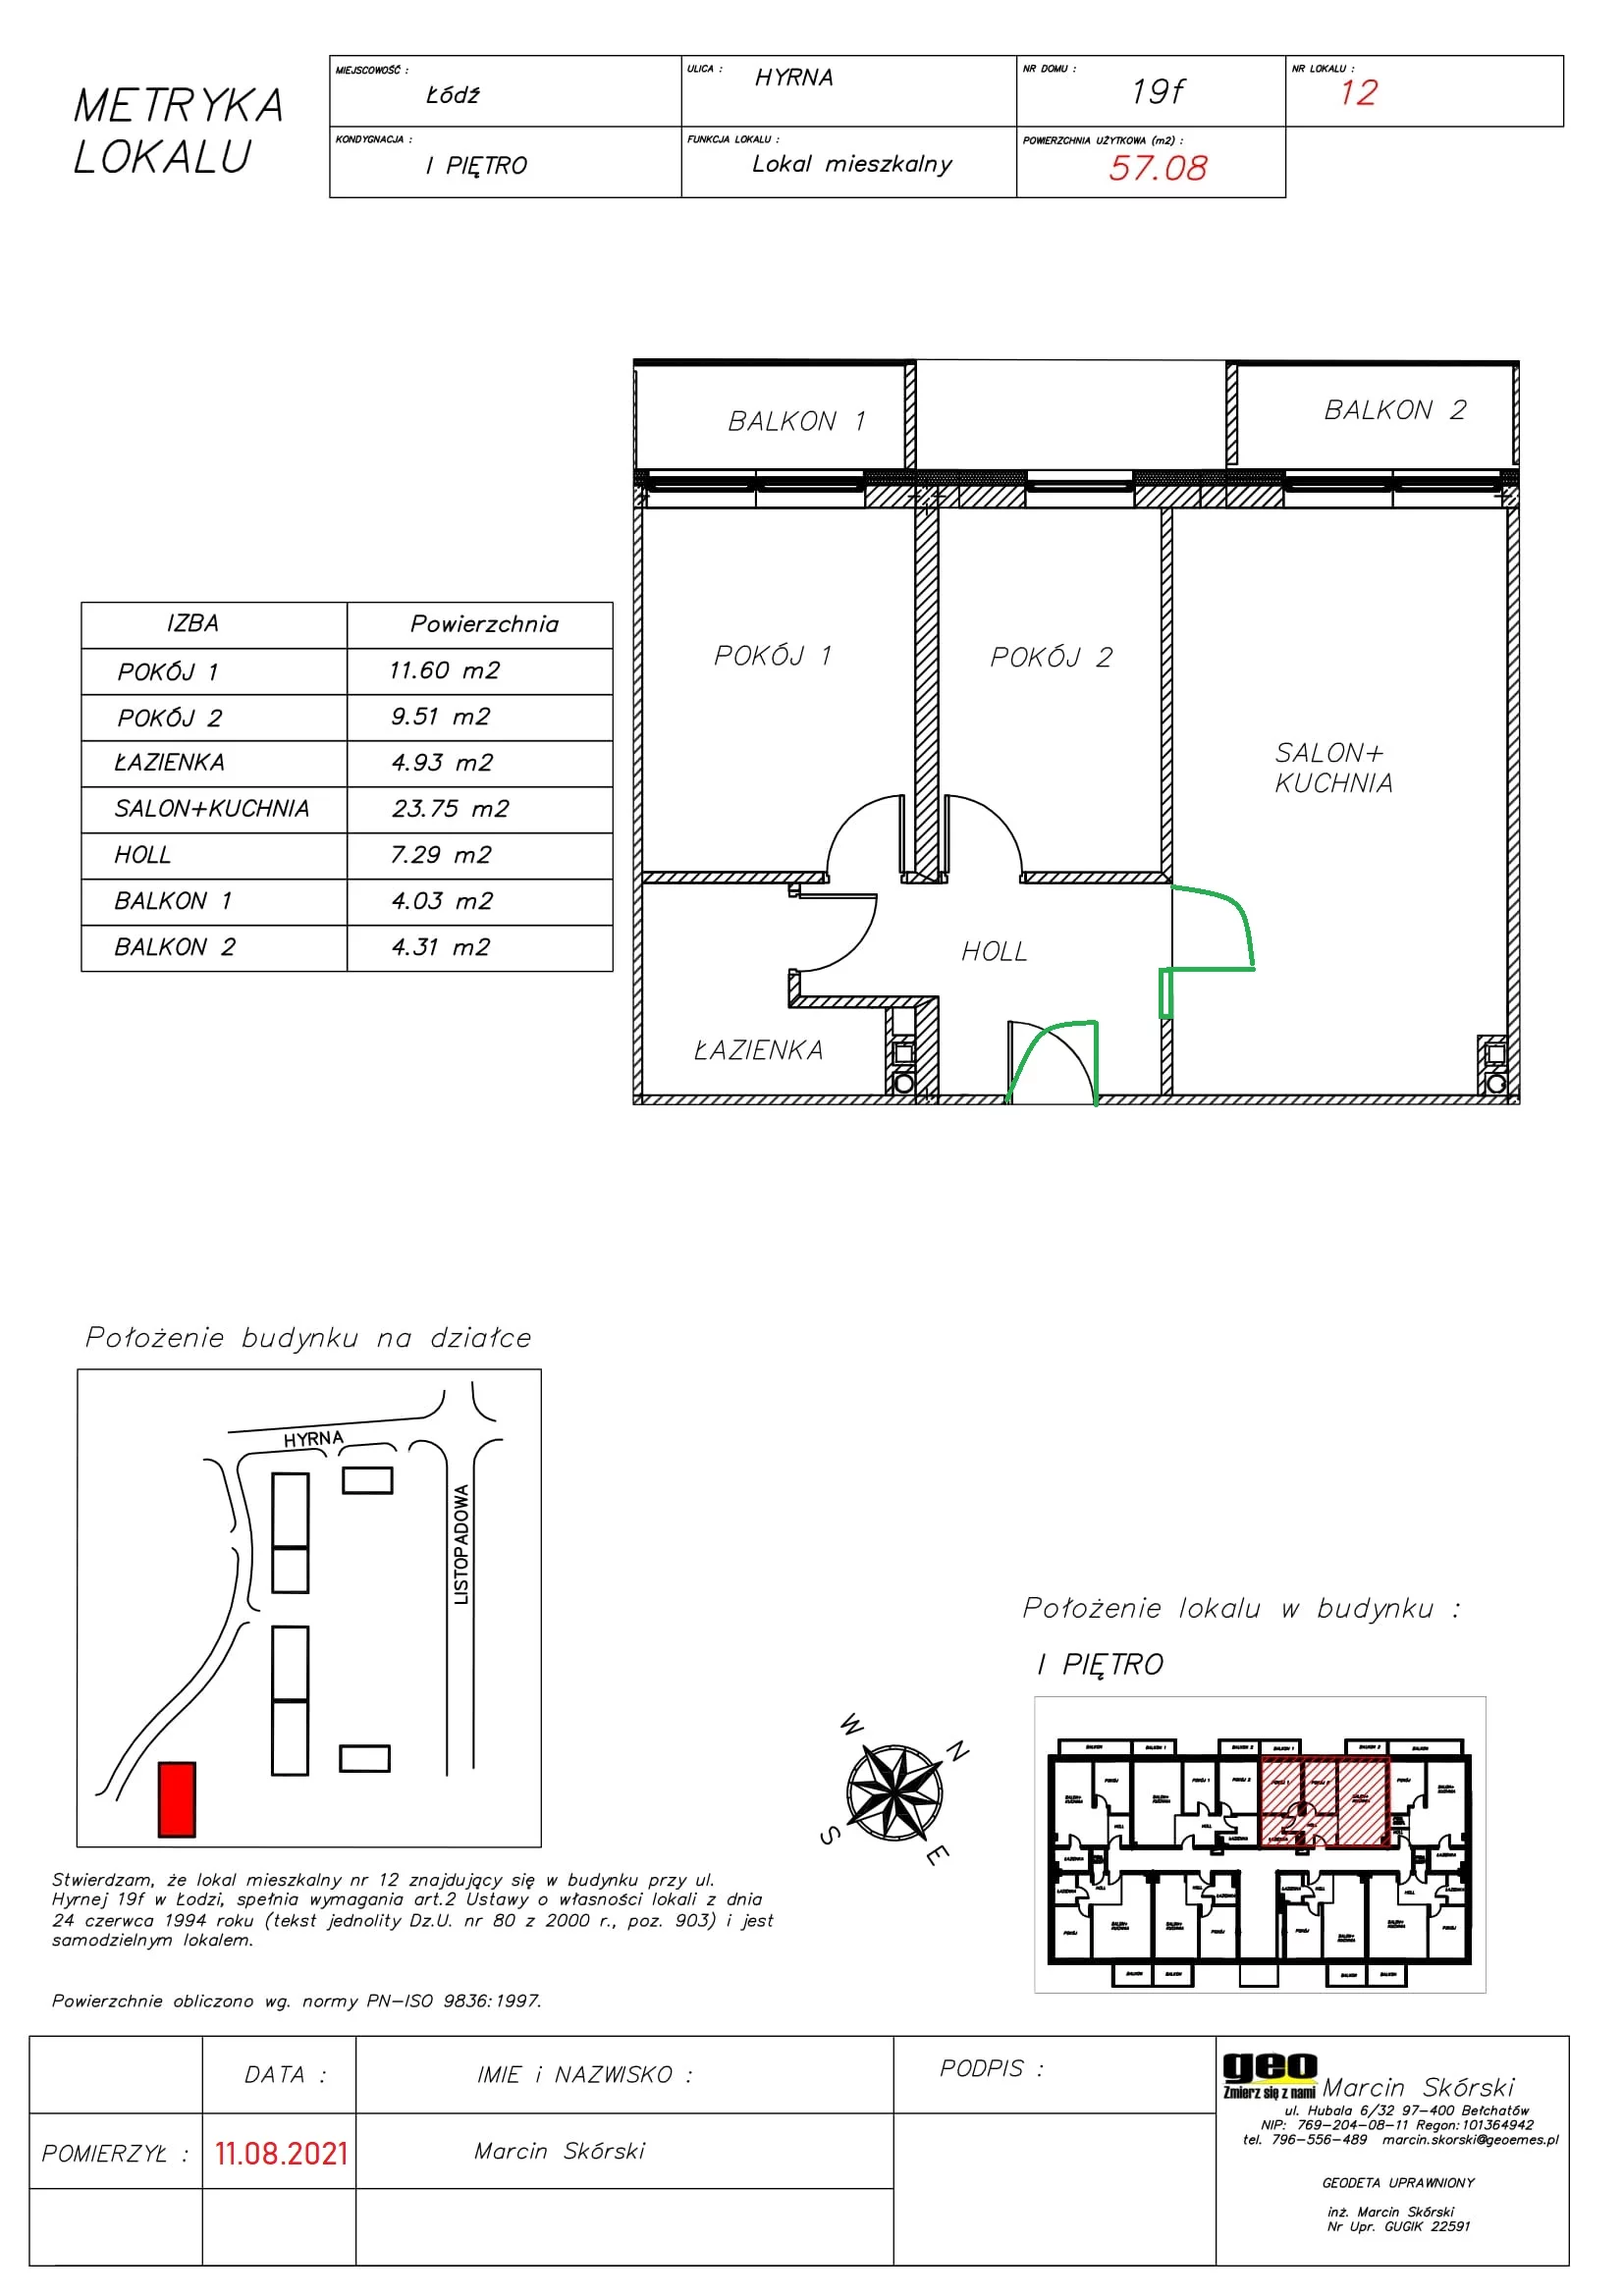 Mieszkanie 57,08 m², piętro 1, oferta nr J/1/12, Natura Park, Łódź, Widzew, Dolina Łódki, ul. Listopadowa